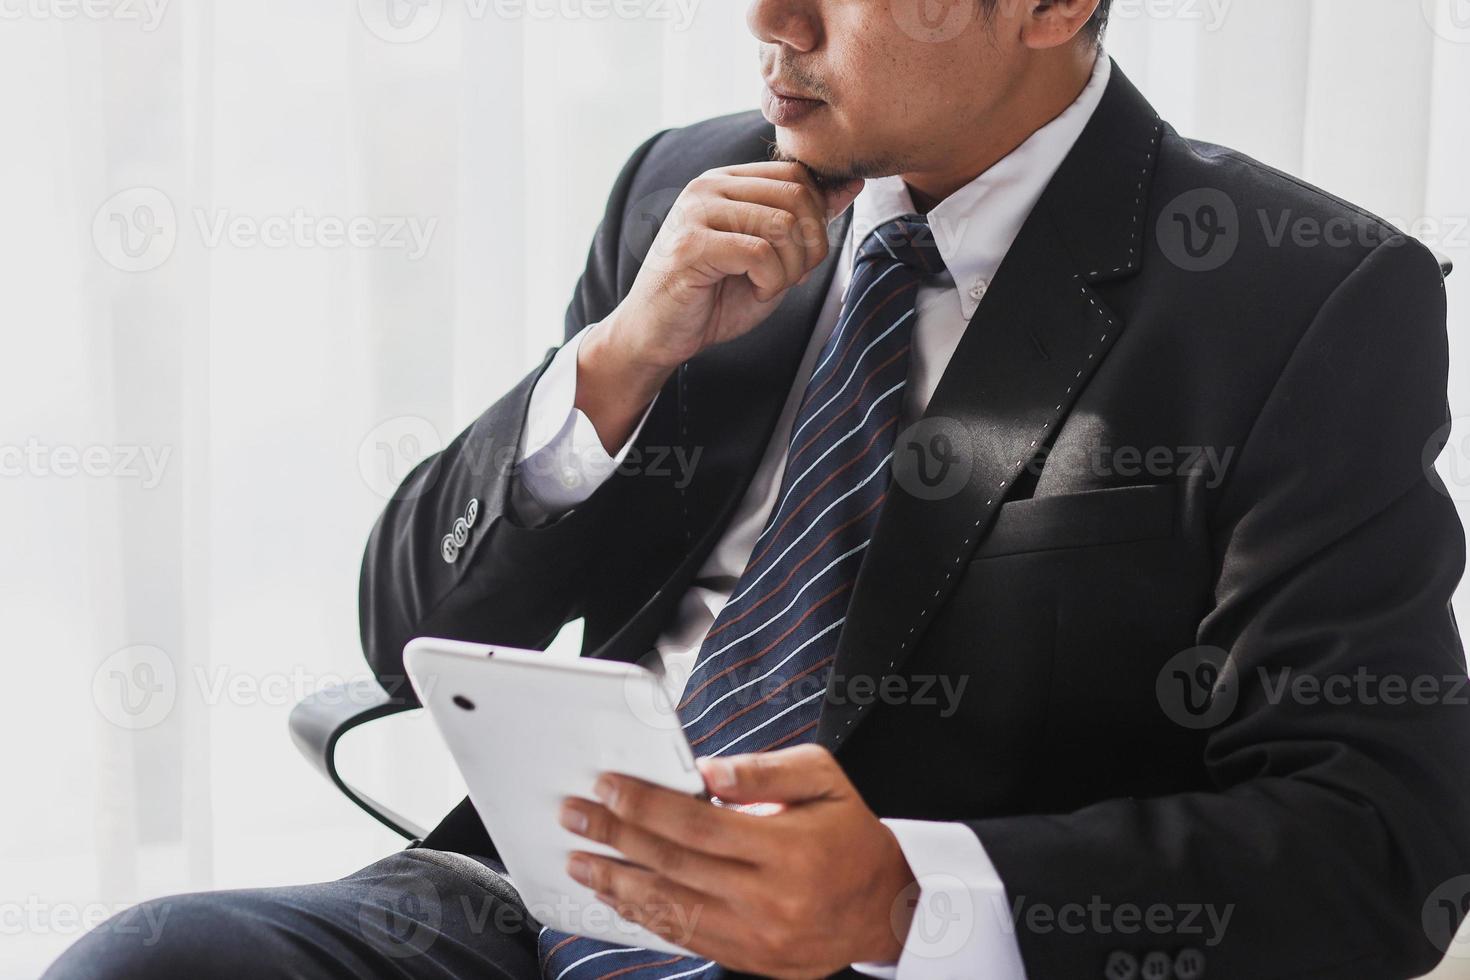 captura recortada de un hombre de negocios con traje negro y corbata sentado buscando una idea y sosteniendo un artilugio foto